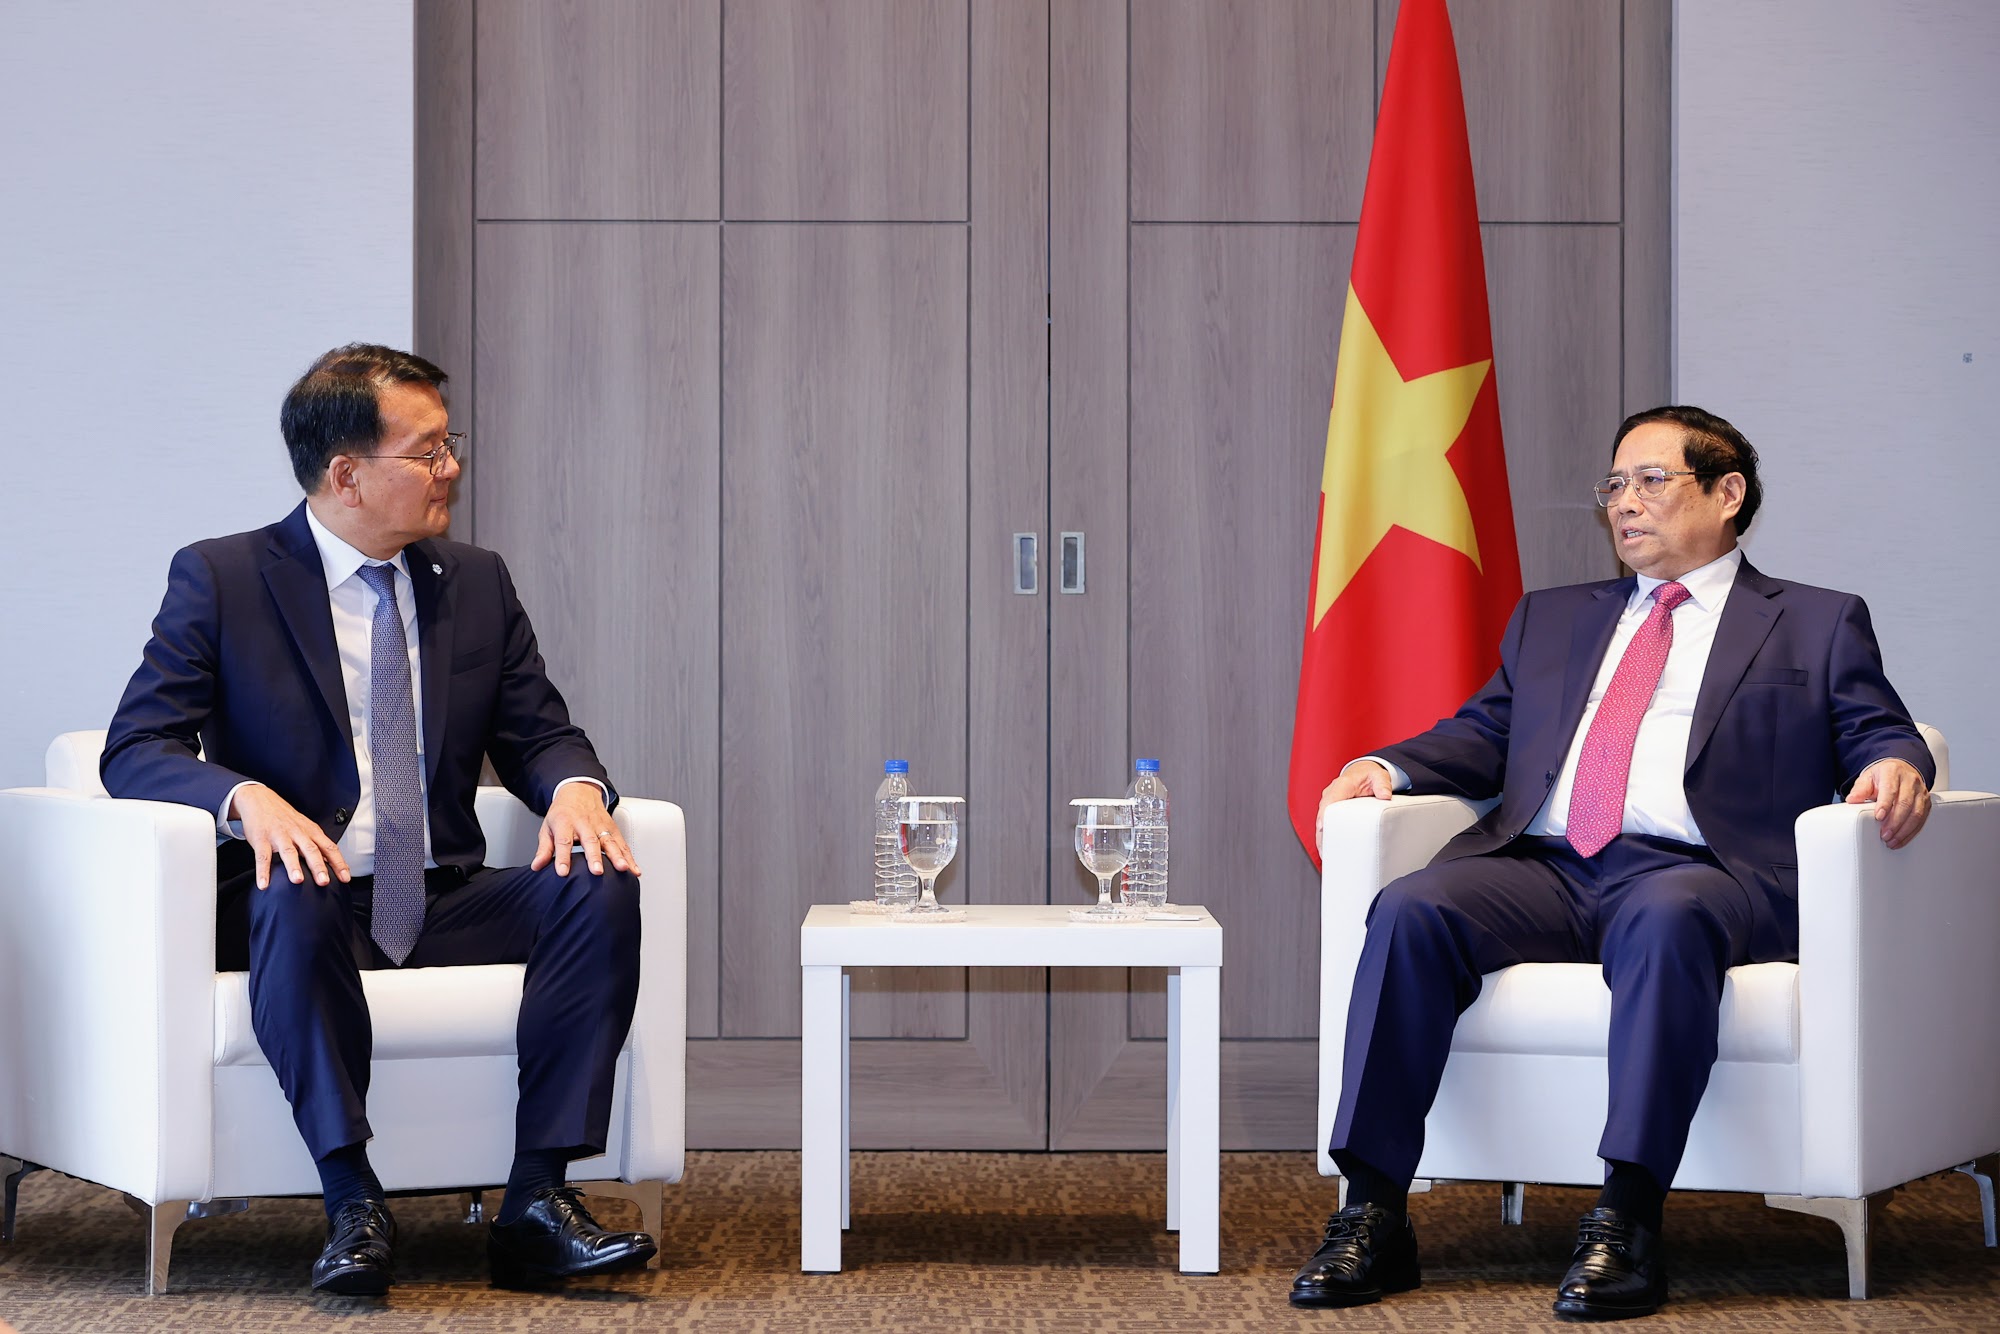 Thủ tướng hoan nghênh dự định hợp tác, hỗ trợ, chuyển giao công nghệ của Tập đoàn với Tổng Công ty dược Việt Nam - Ảnh: VGP/Nhật Bắc